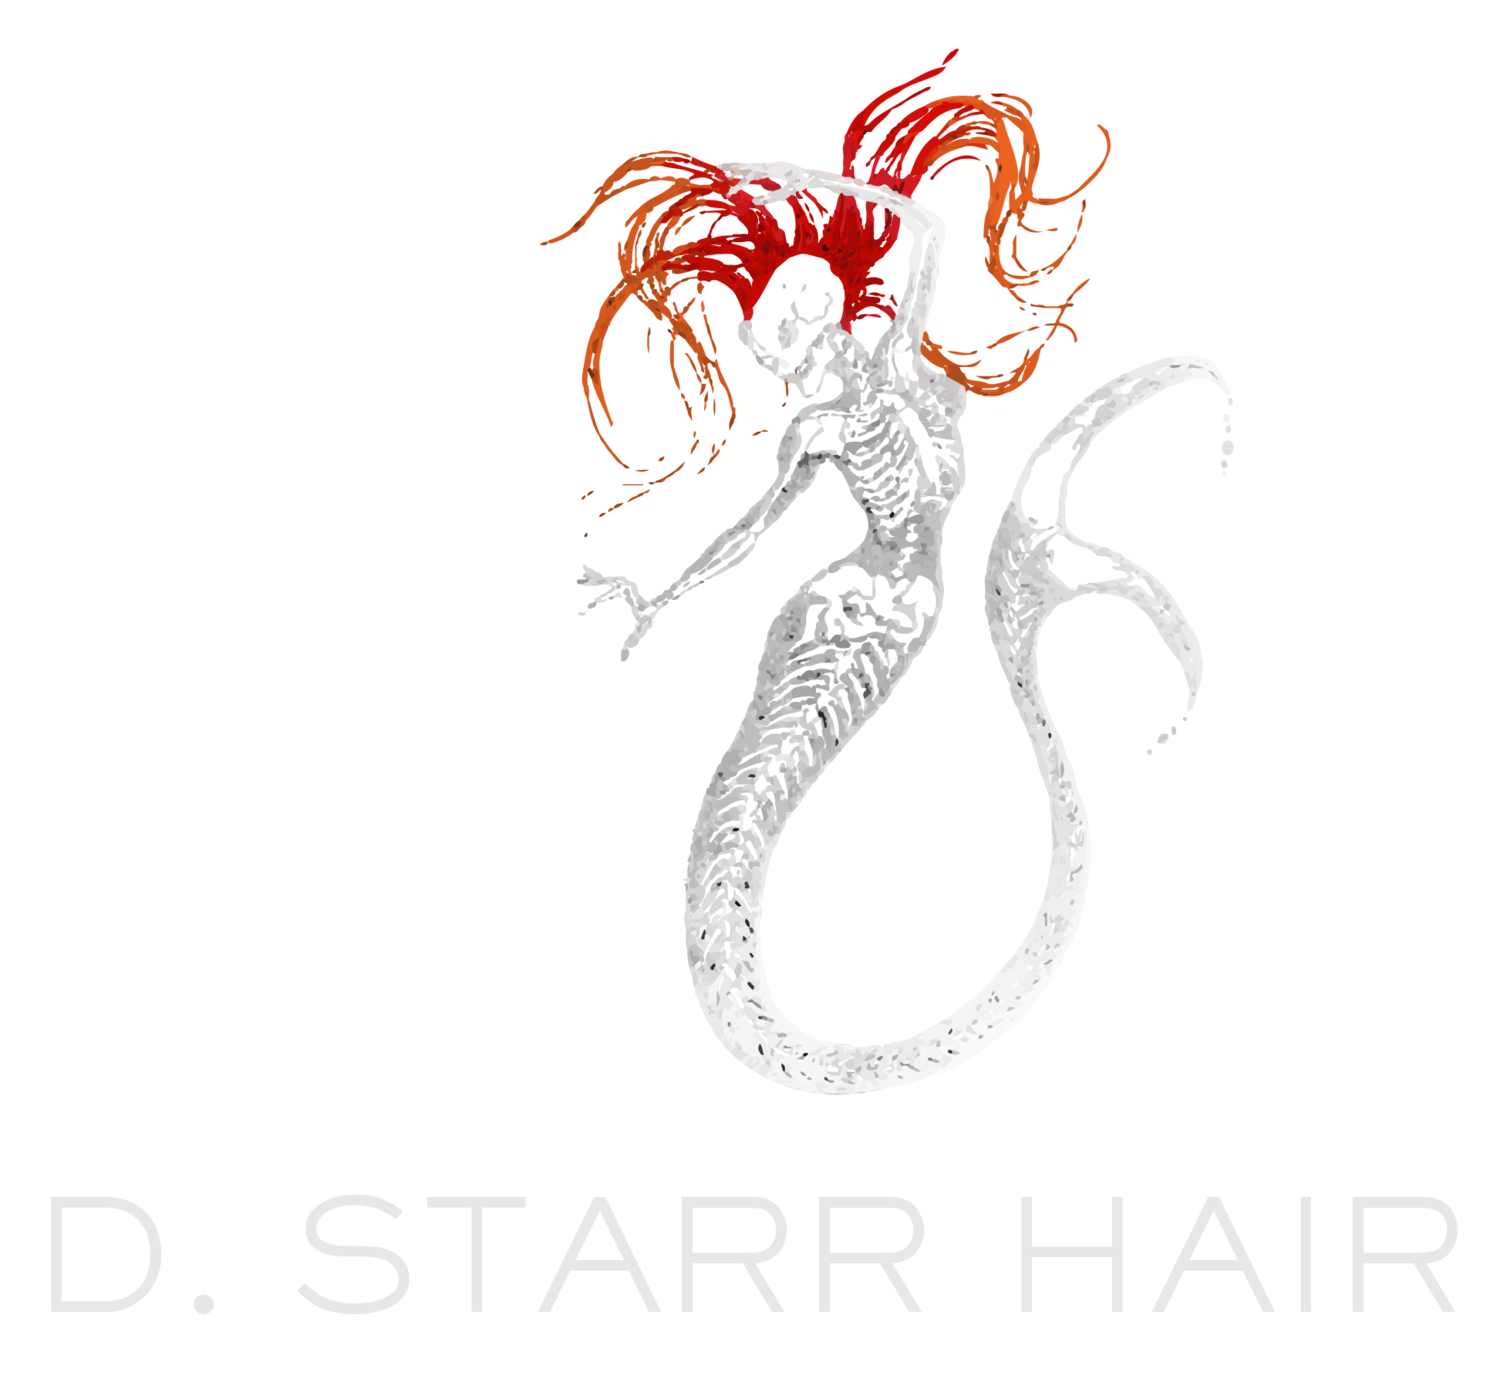 D. Starr Hair